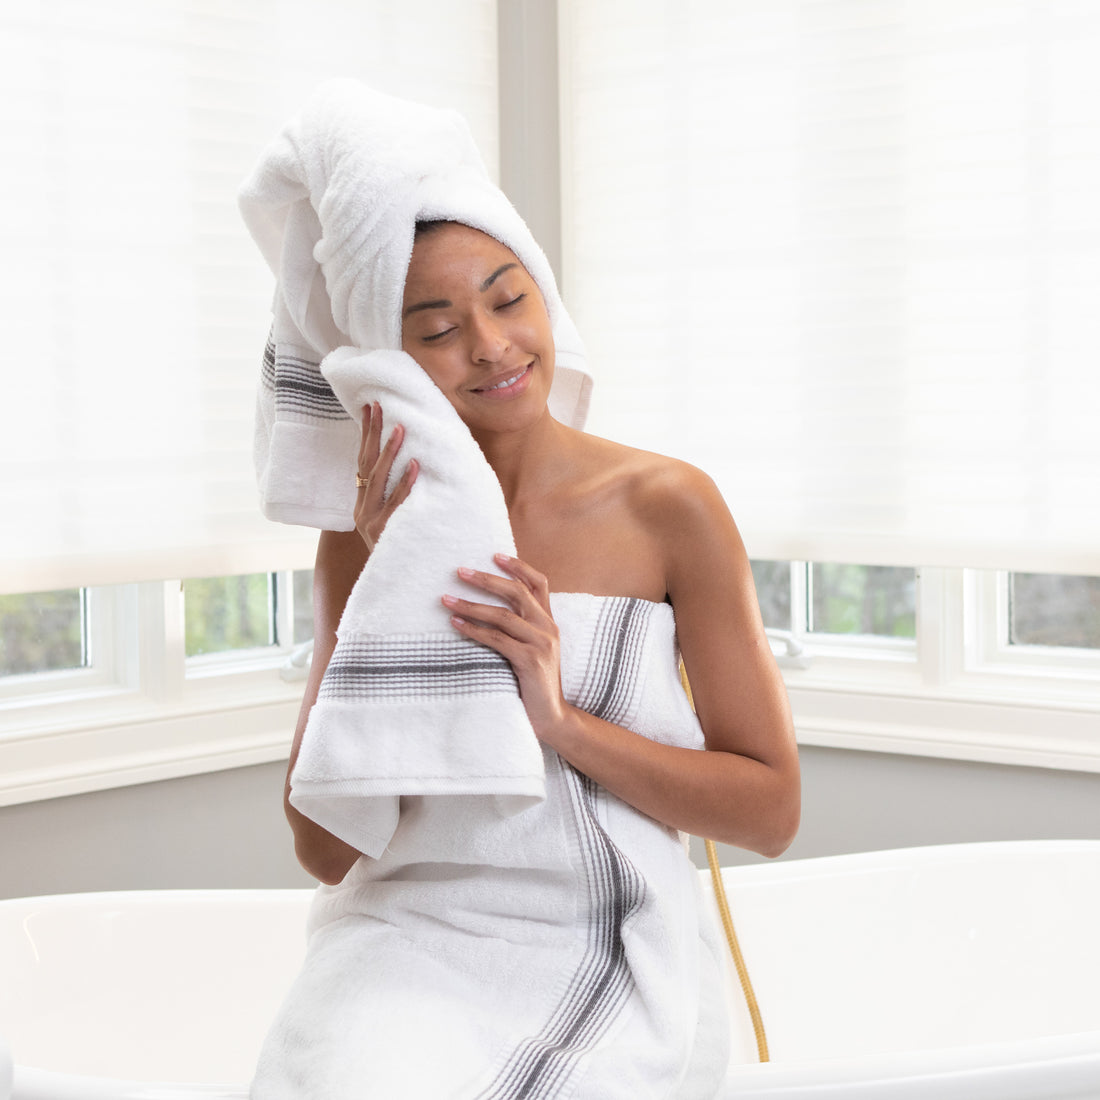 Aegean Ombré Stripe White Bath Towels